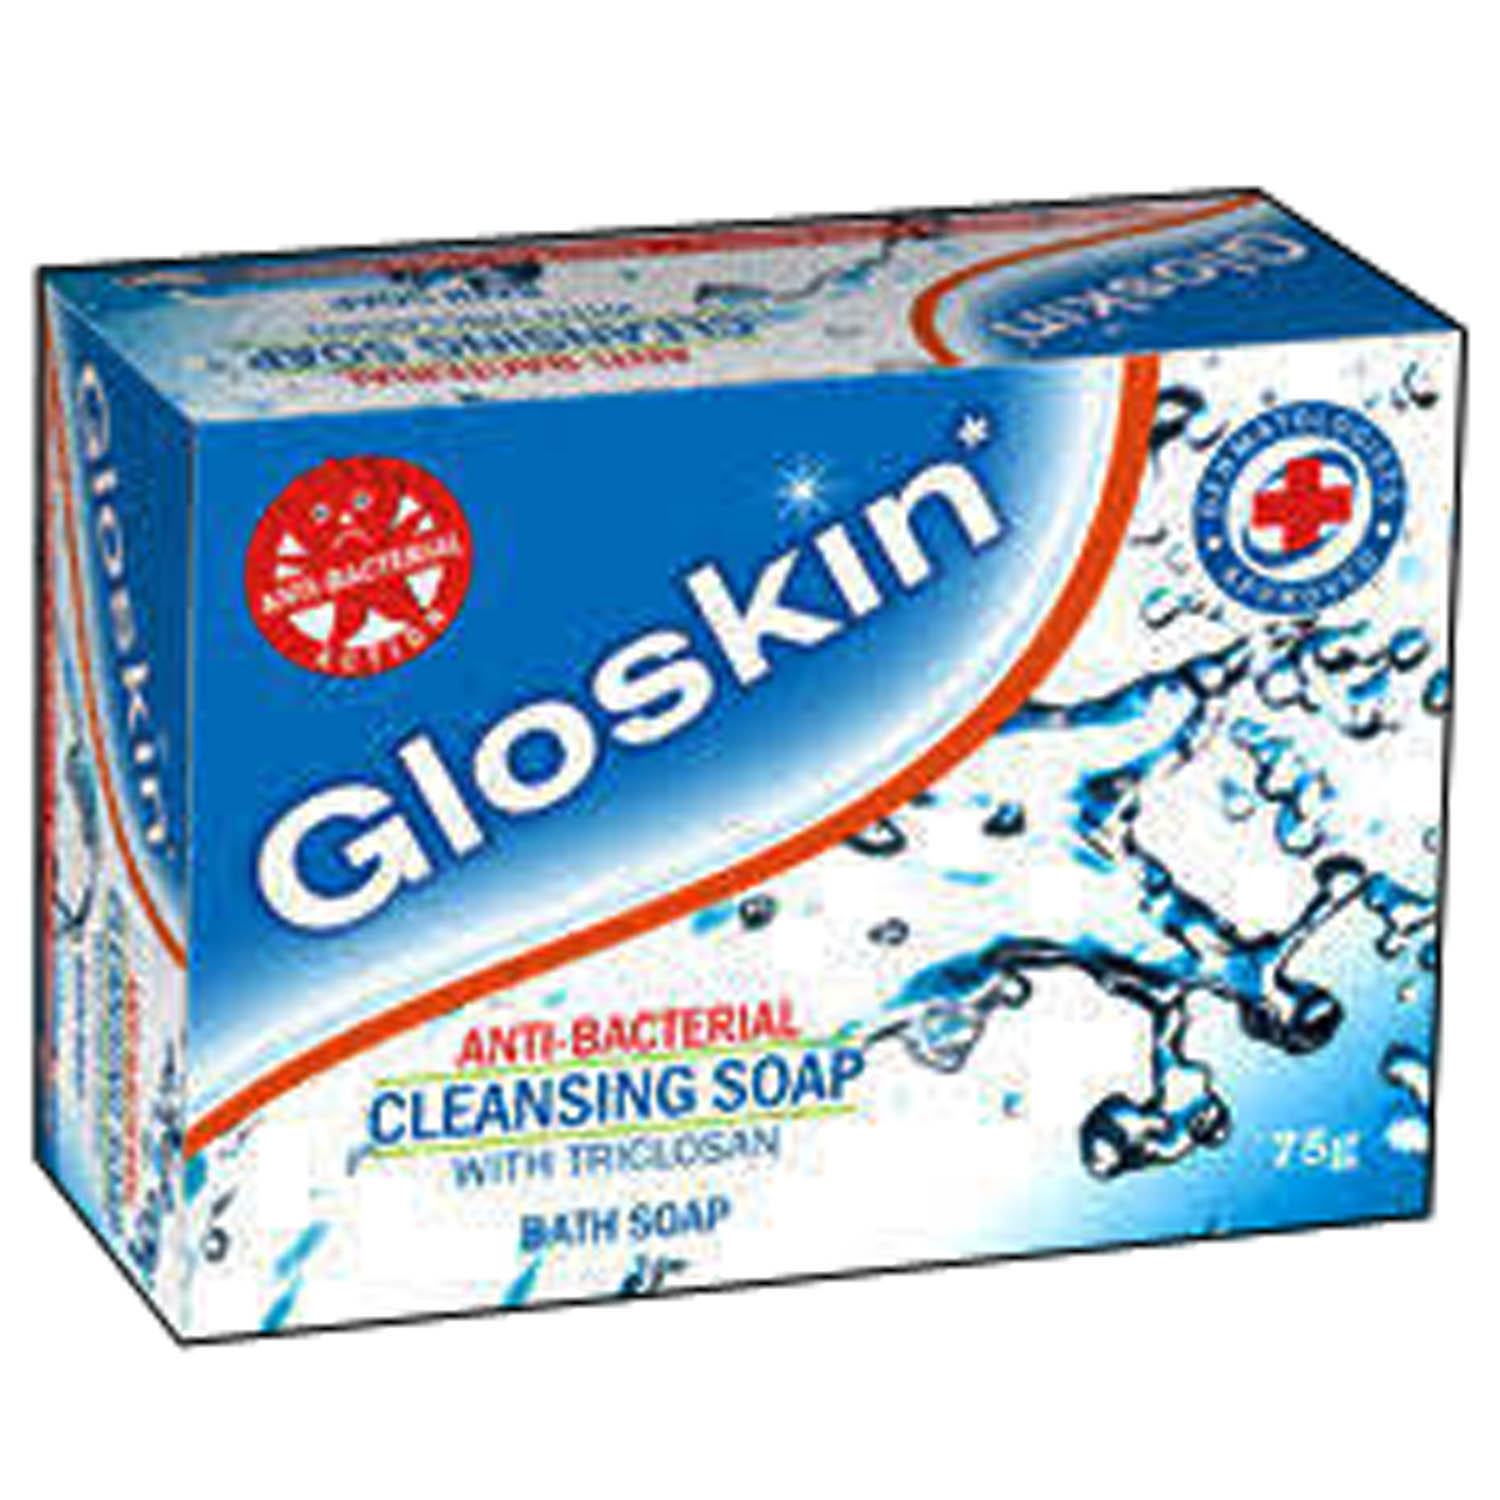 Buy Gloskin Soap, 75 gm Online